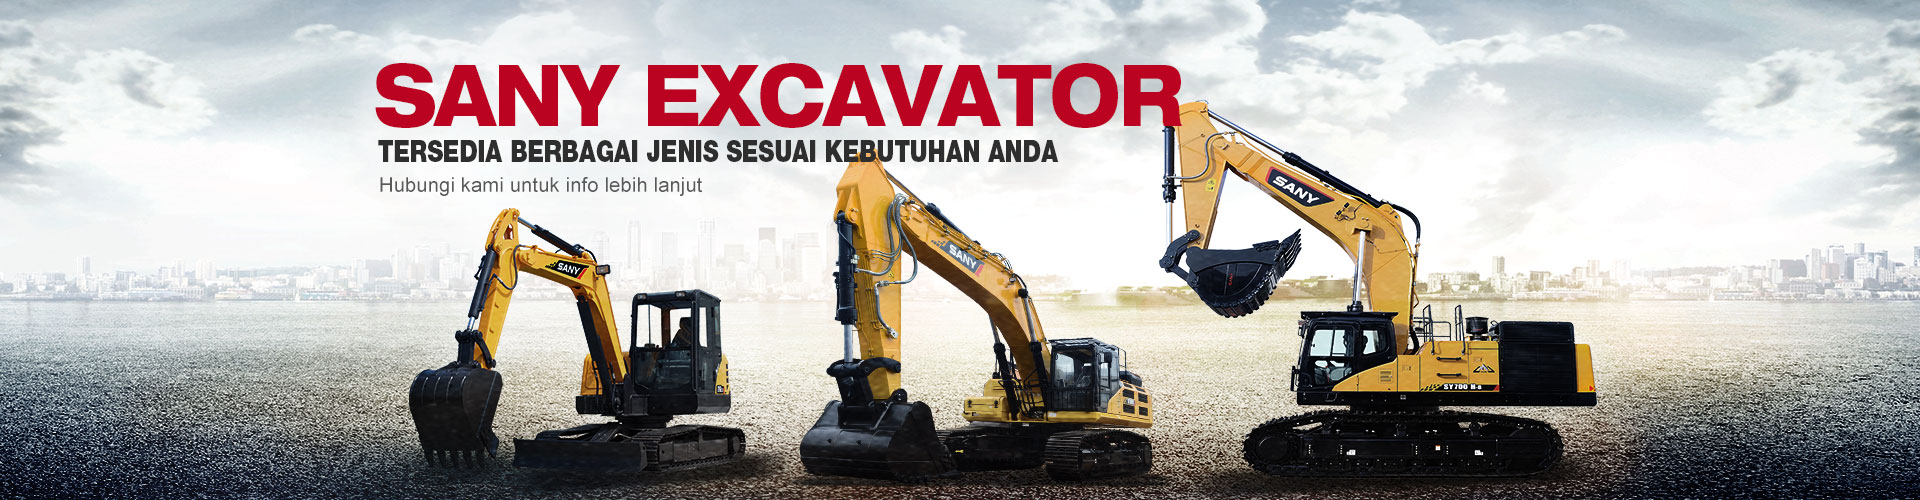 SANY Excavator tersedia berbagai jenis sesuai kebutuhan Anda